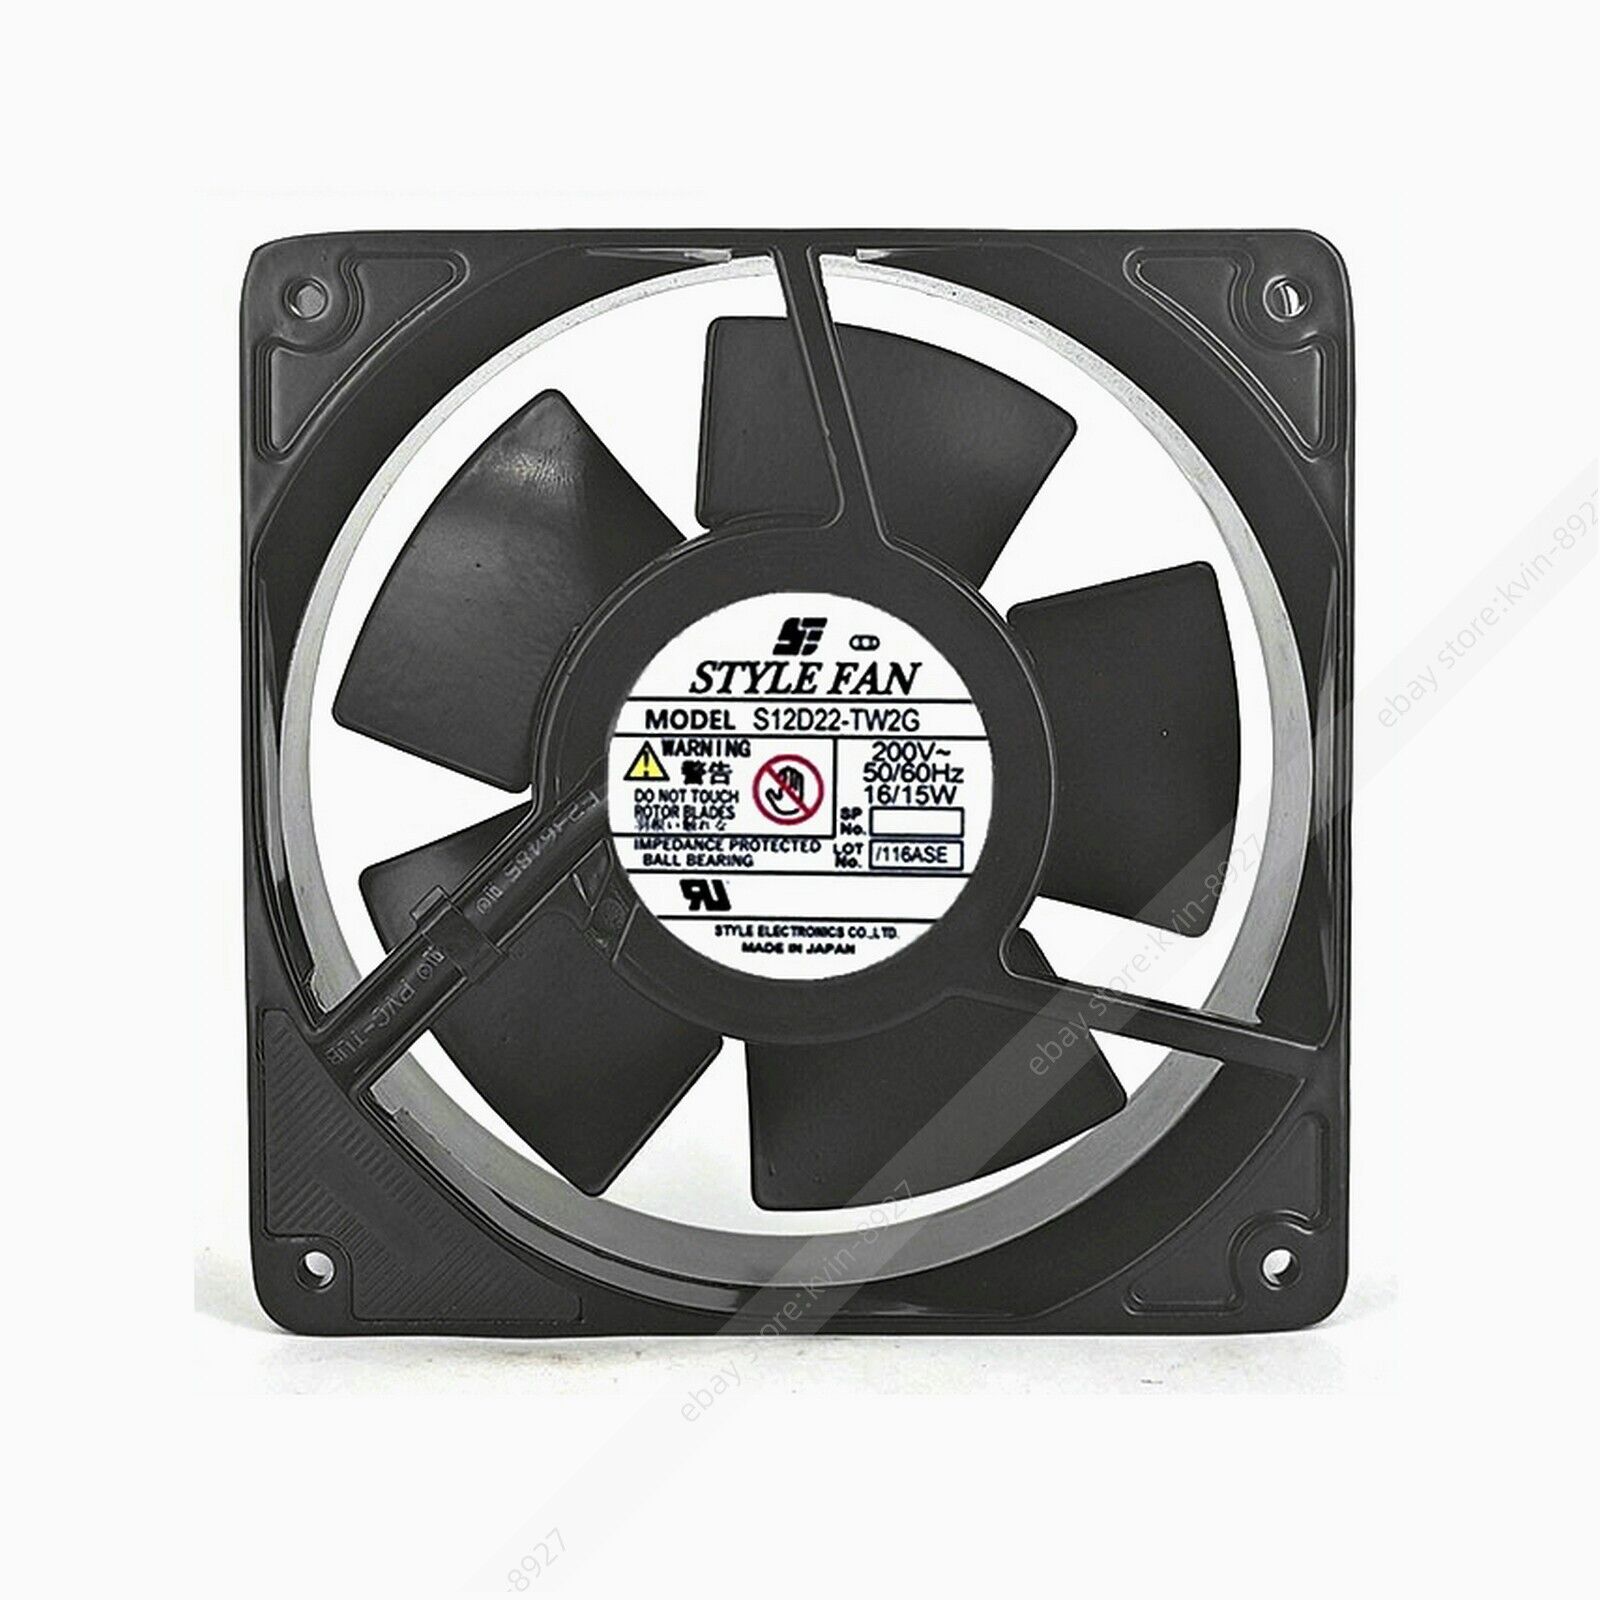 1PC STYLE FAN S12D22-TW2G 200V 16/15W 12038 12CM Cooling Fan